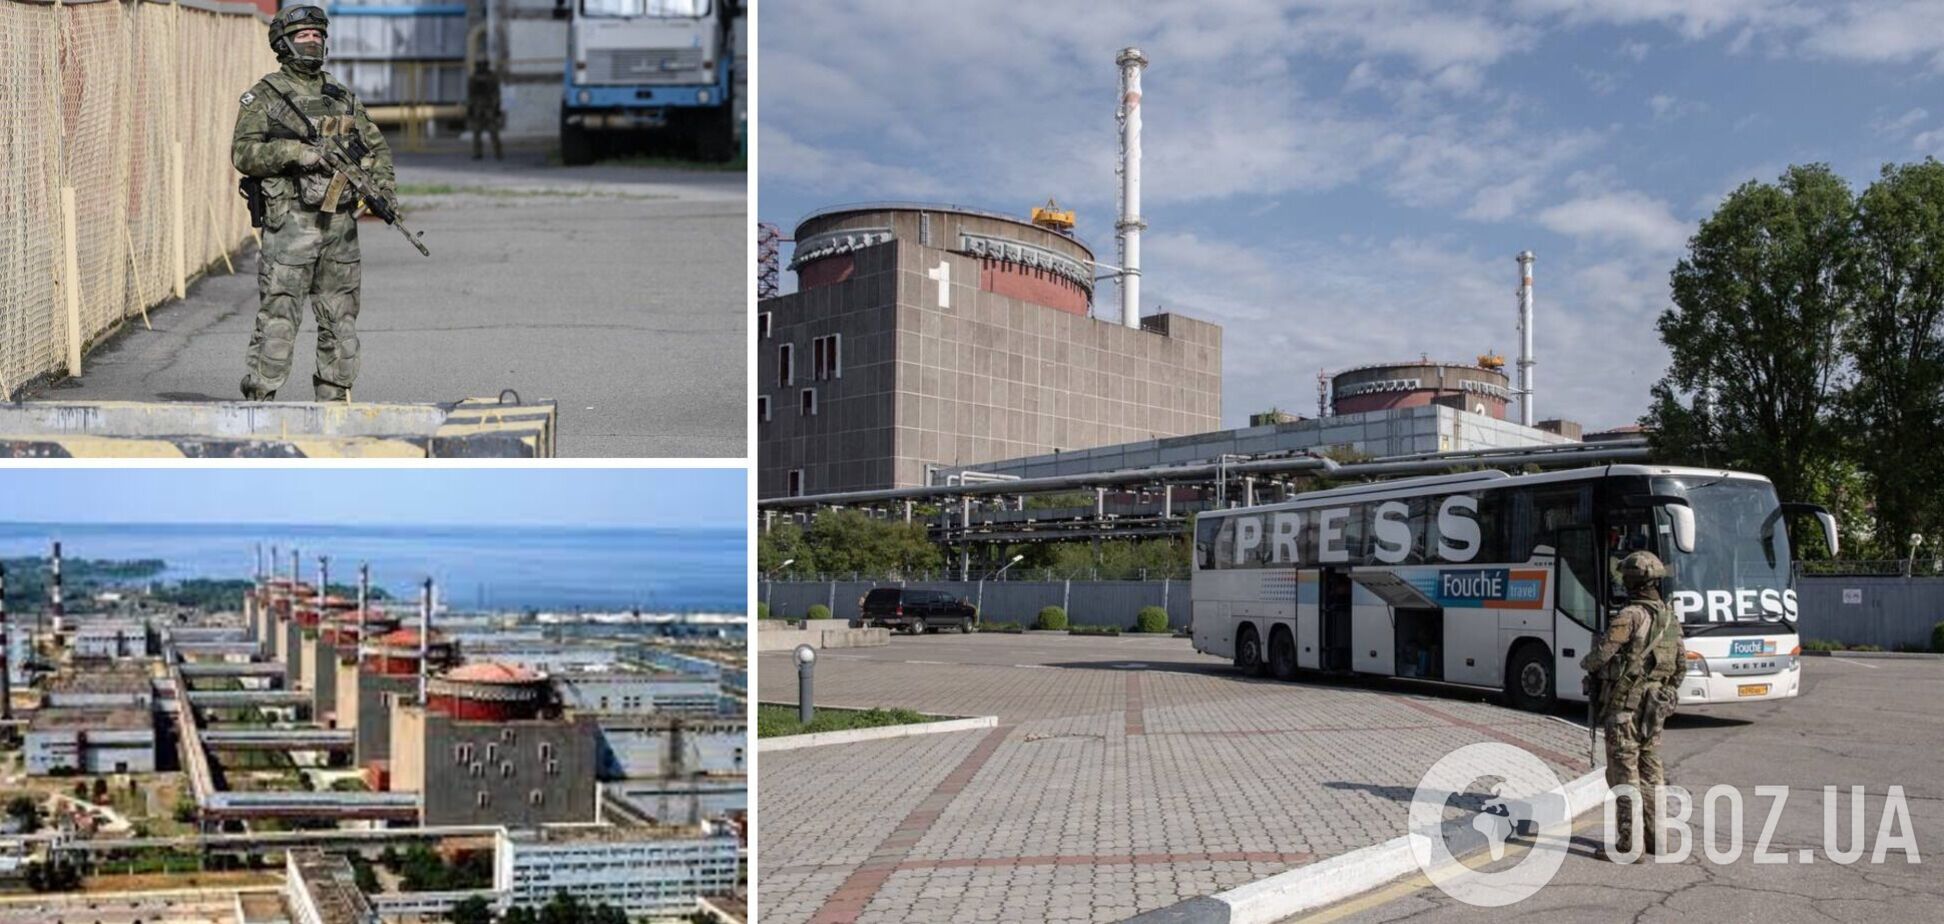 РосСМИ устроили провокацию на АЭС в Энергодаре: первые детали